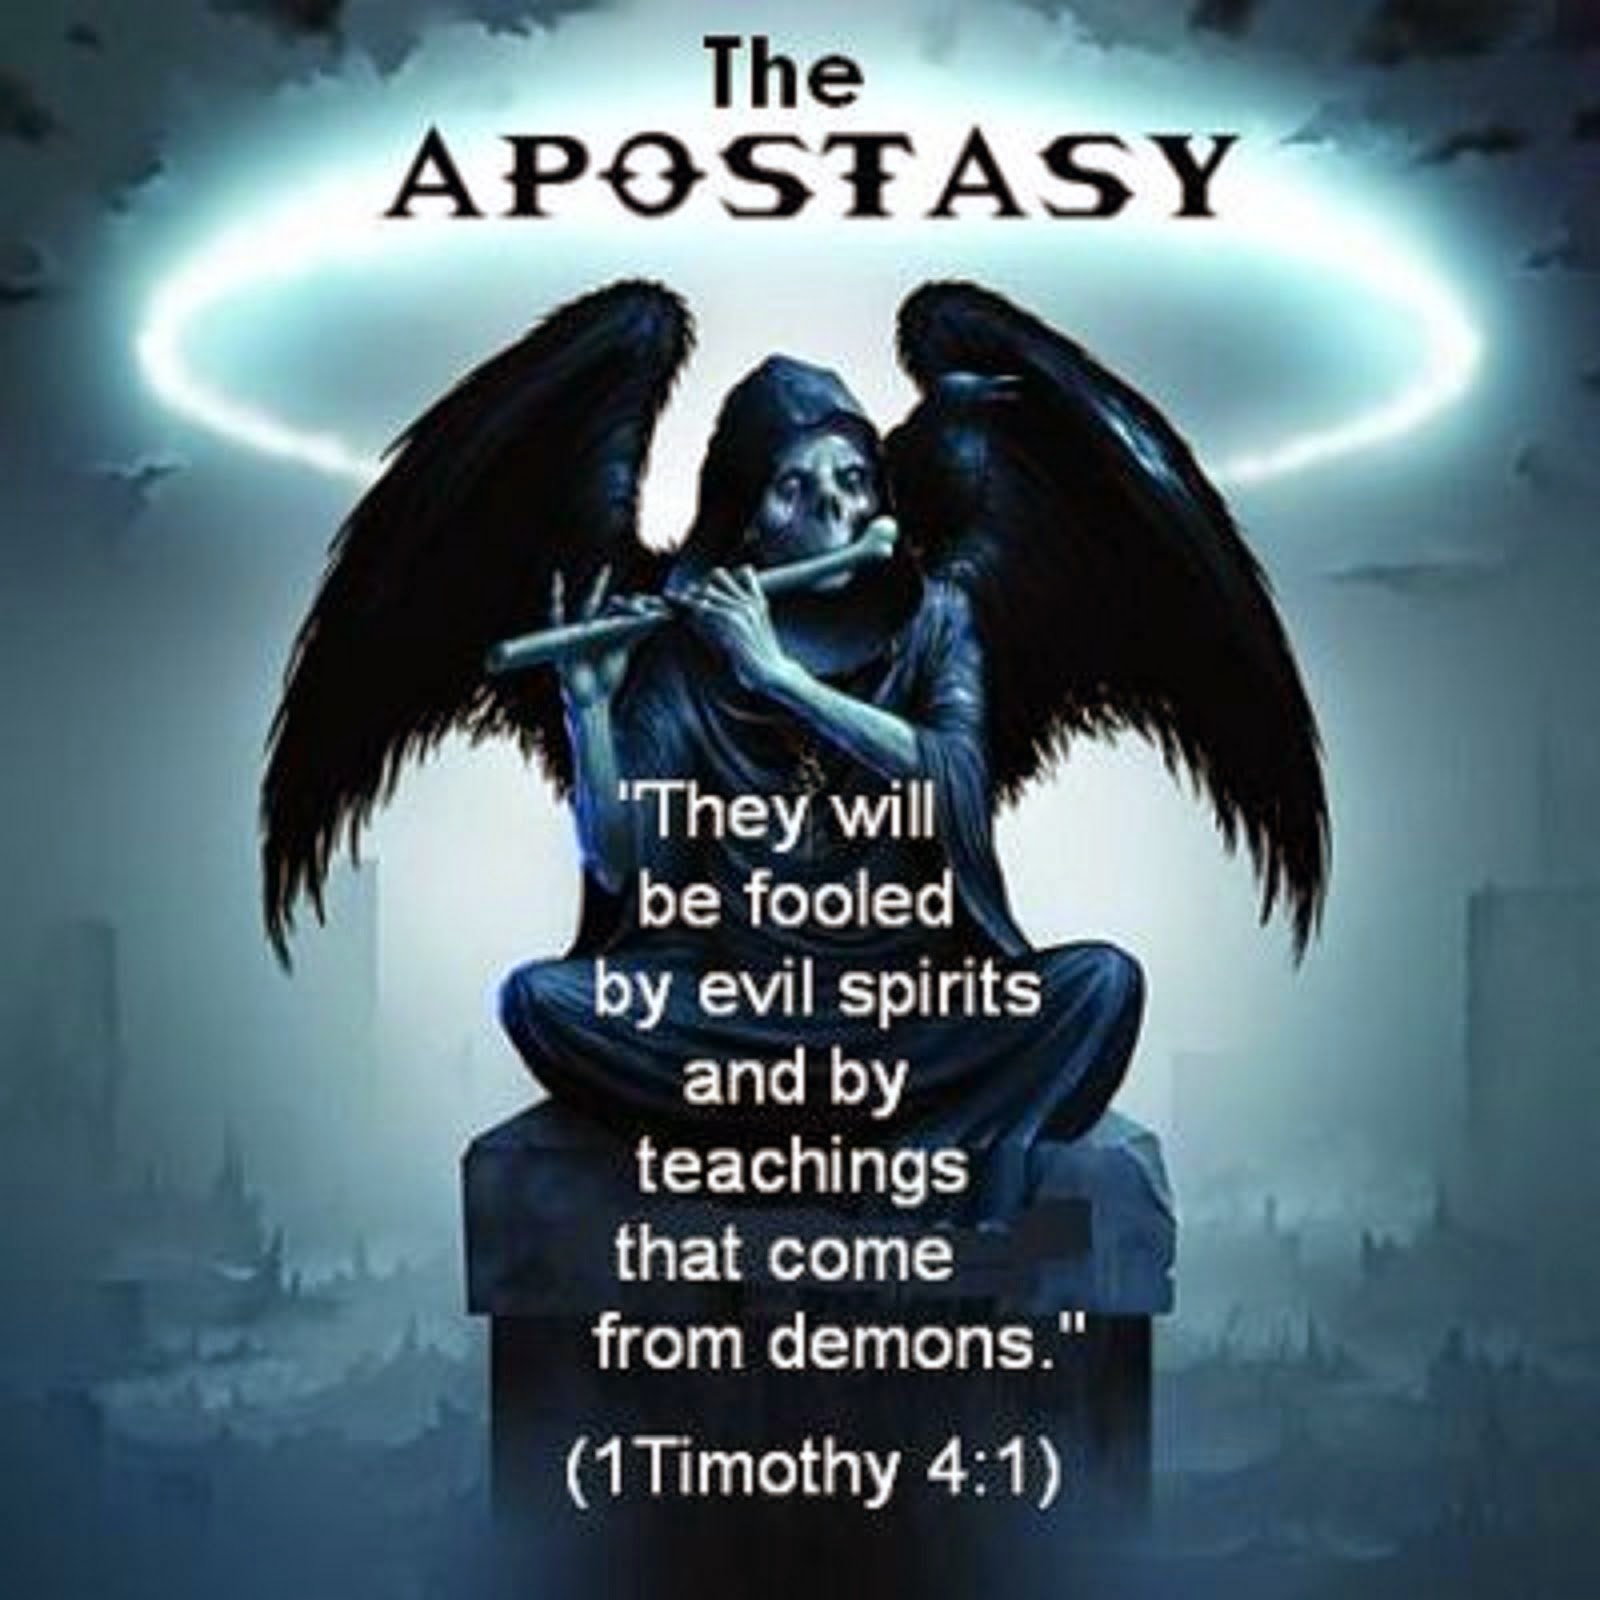 THE APOSTASY